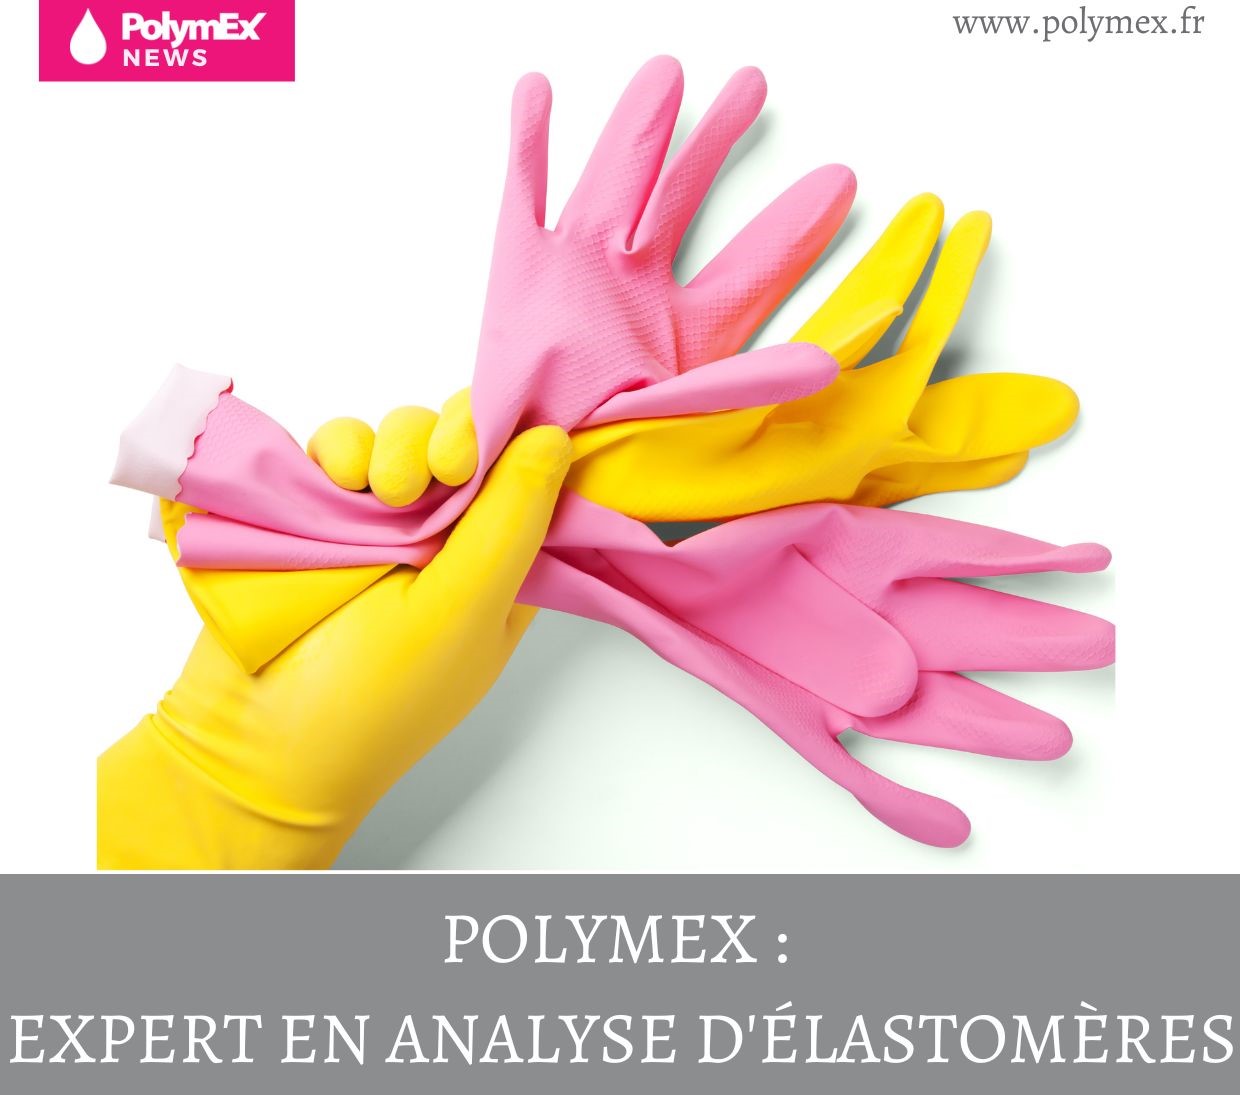 Polymex : Expert en analyse d’élastomères !